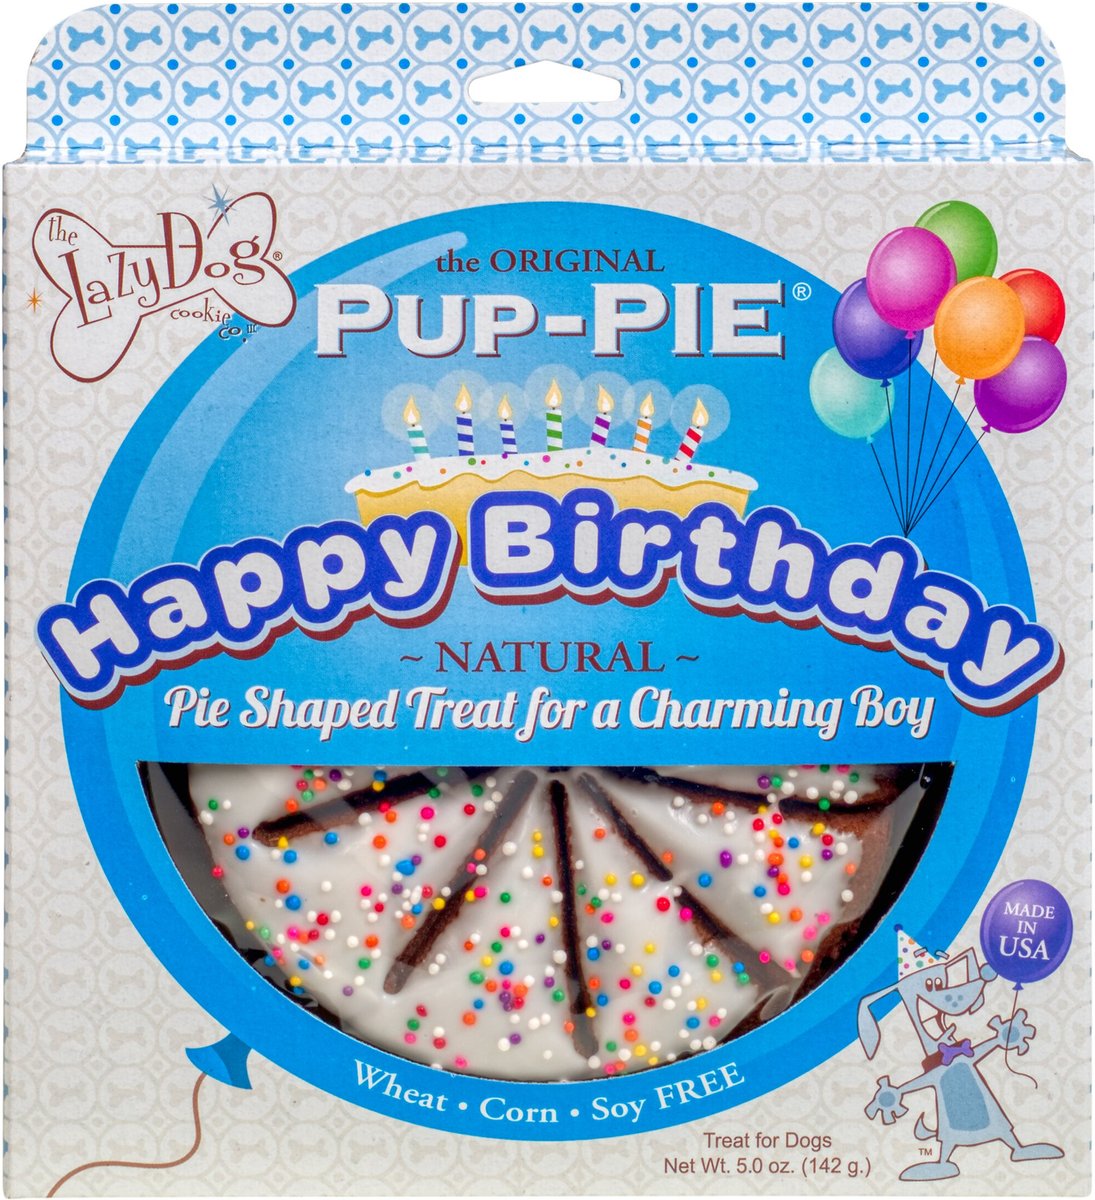 The Lazy Dog Cookie Co. Happy Birthday Pup-PIE Dog Treat, Boy